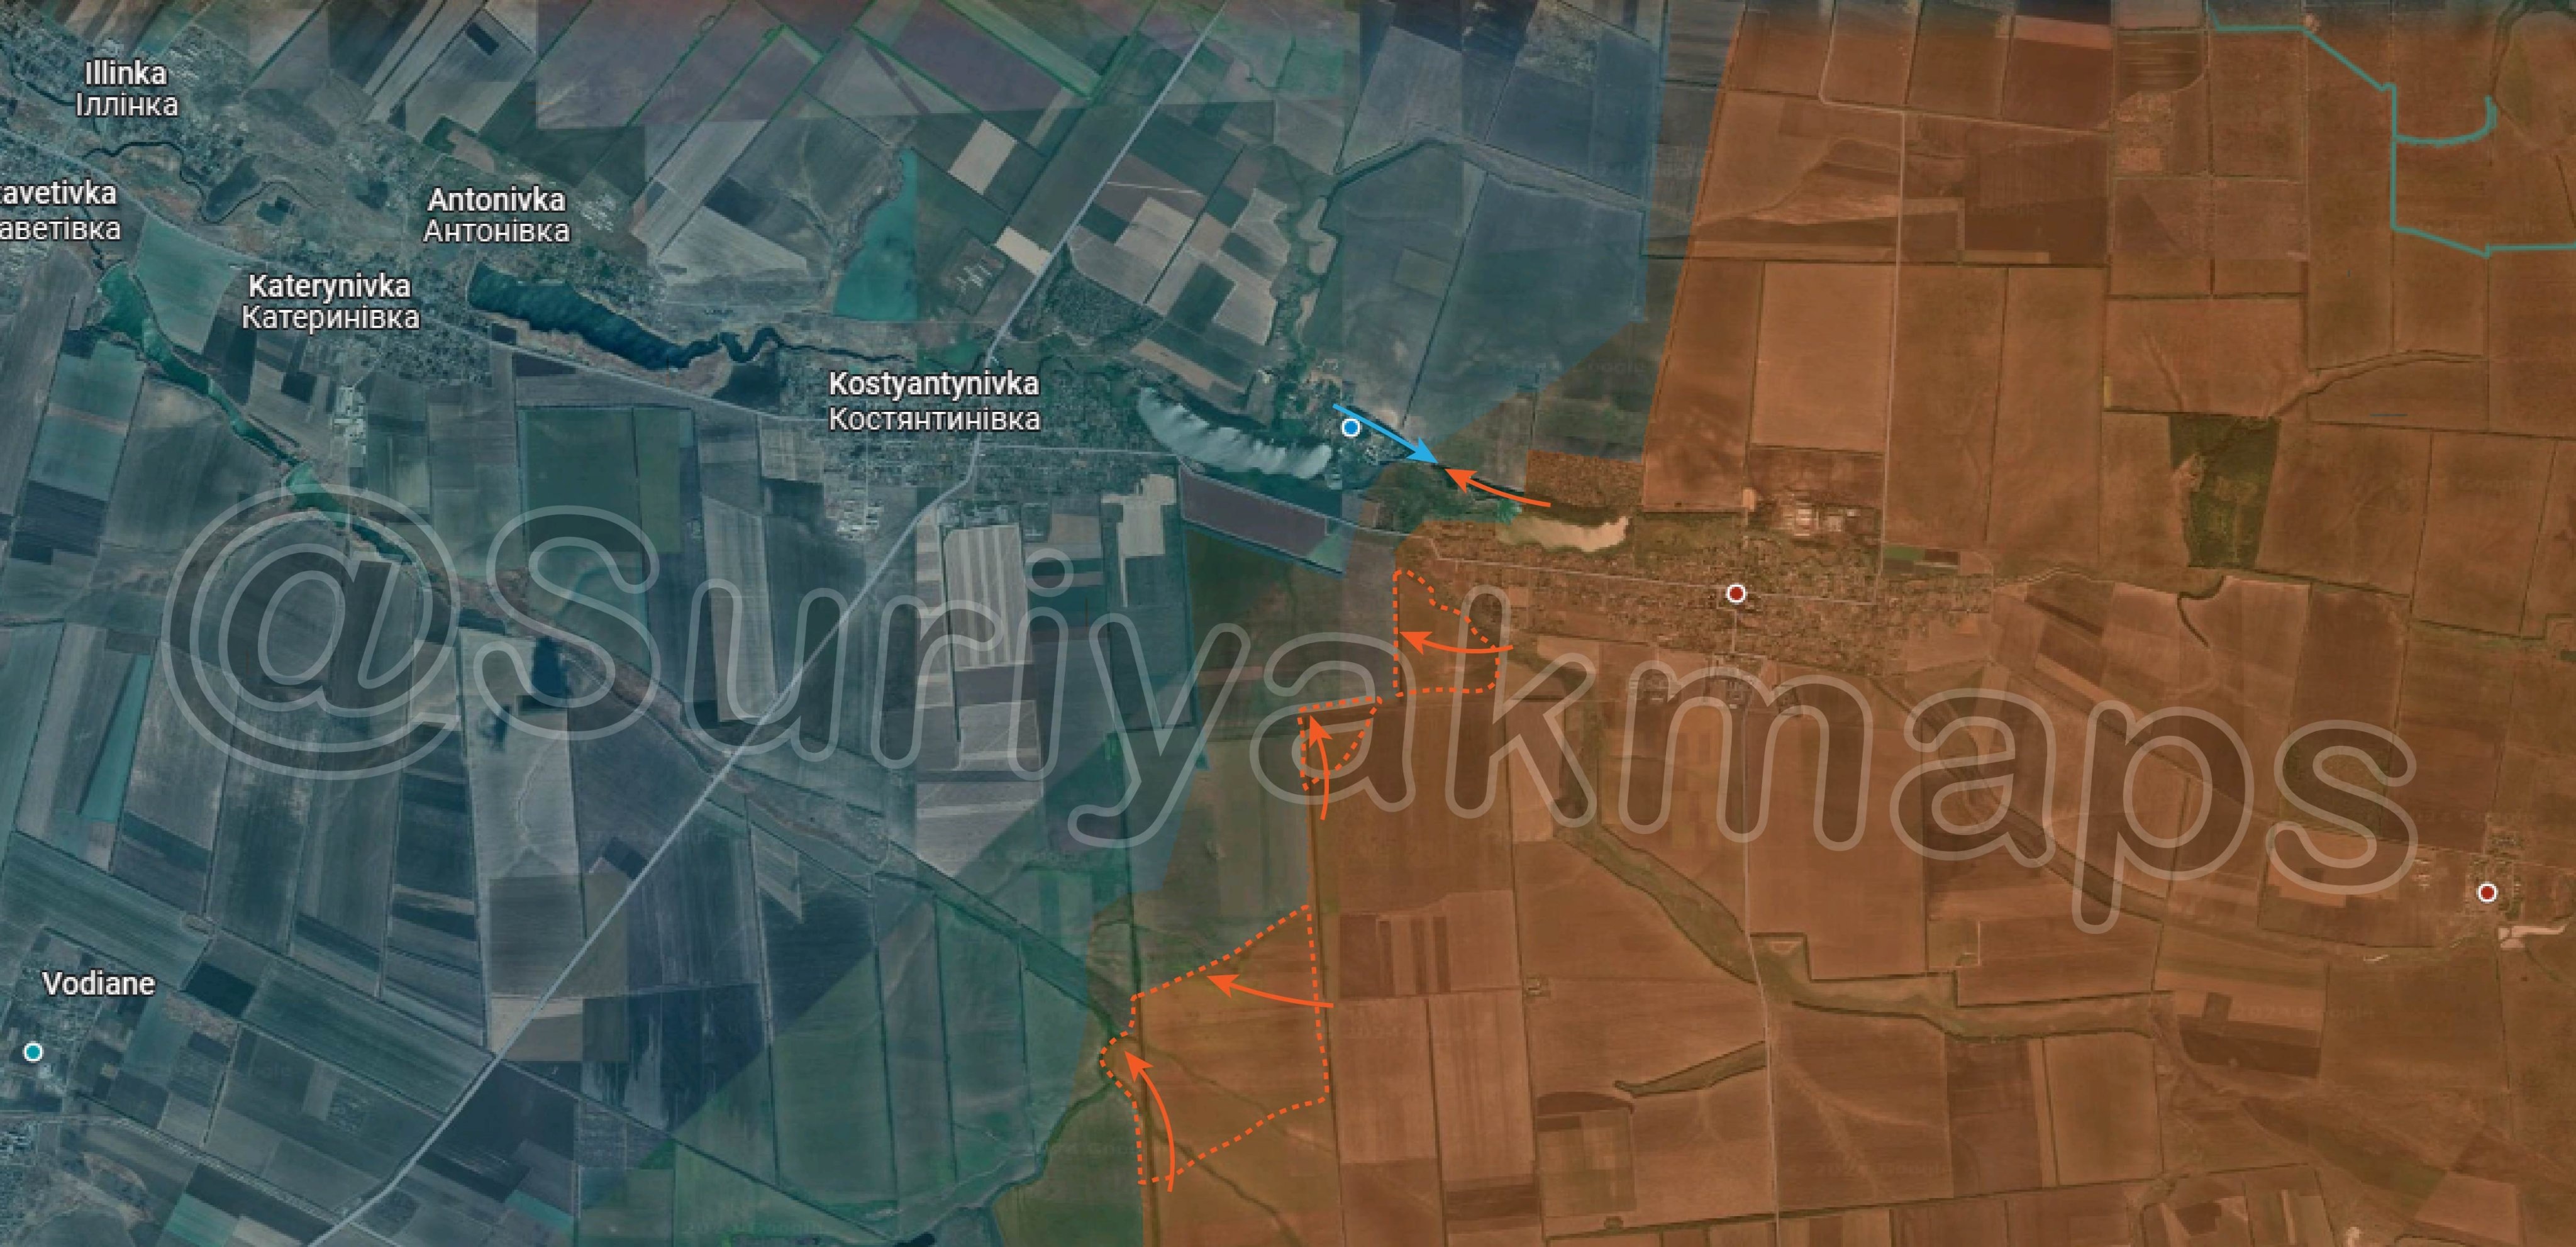 View - Chiến sự Ukraine 2/5: Lực lượng của Kiev bị Nga bao vây ở bắc Avdiivka | Báo Dân trí